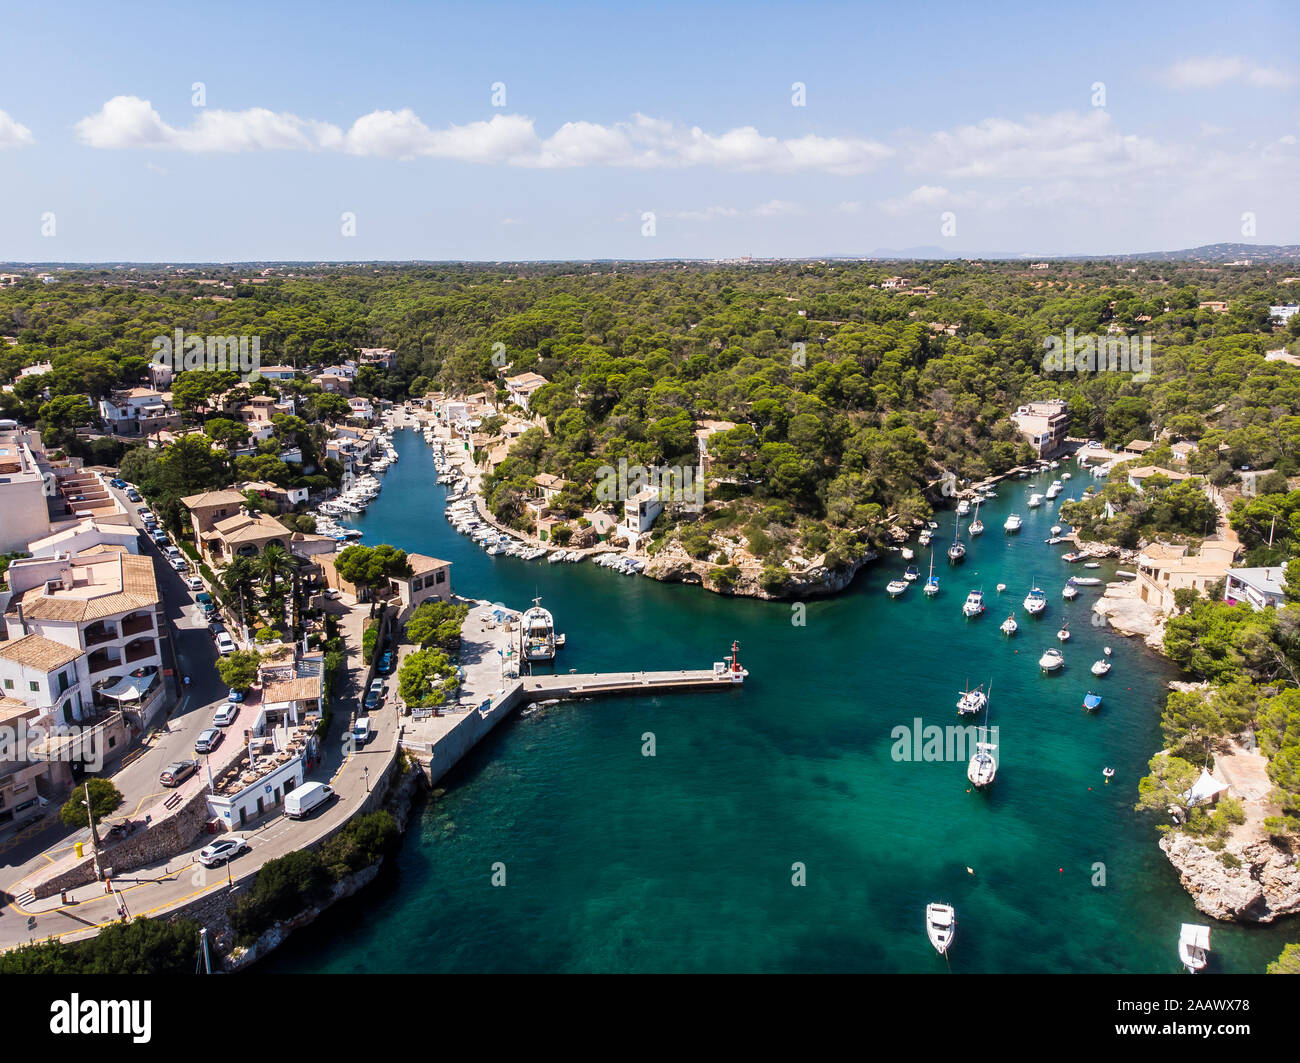 España, Islas Baleares, Mallorca, vista aérea de la bahía de Cala Figuera y Calo d'en busques con el puerto de Cala Figuera Foto de stock